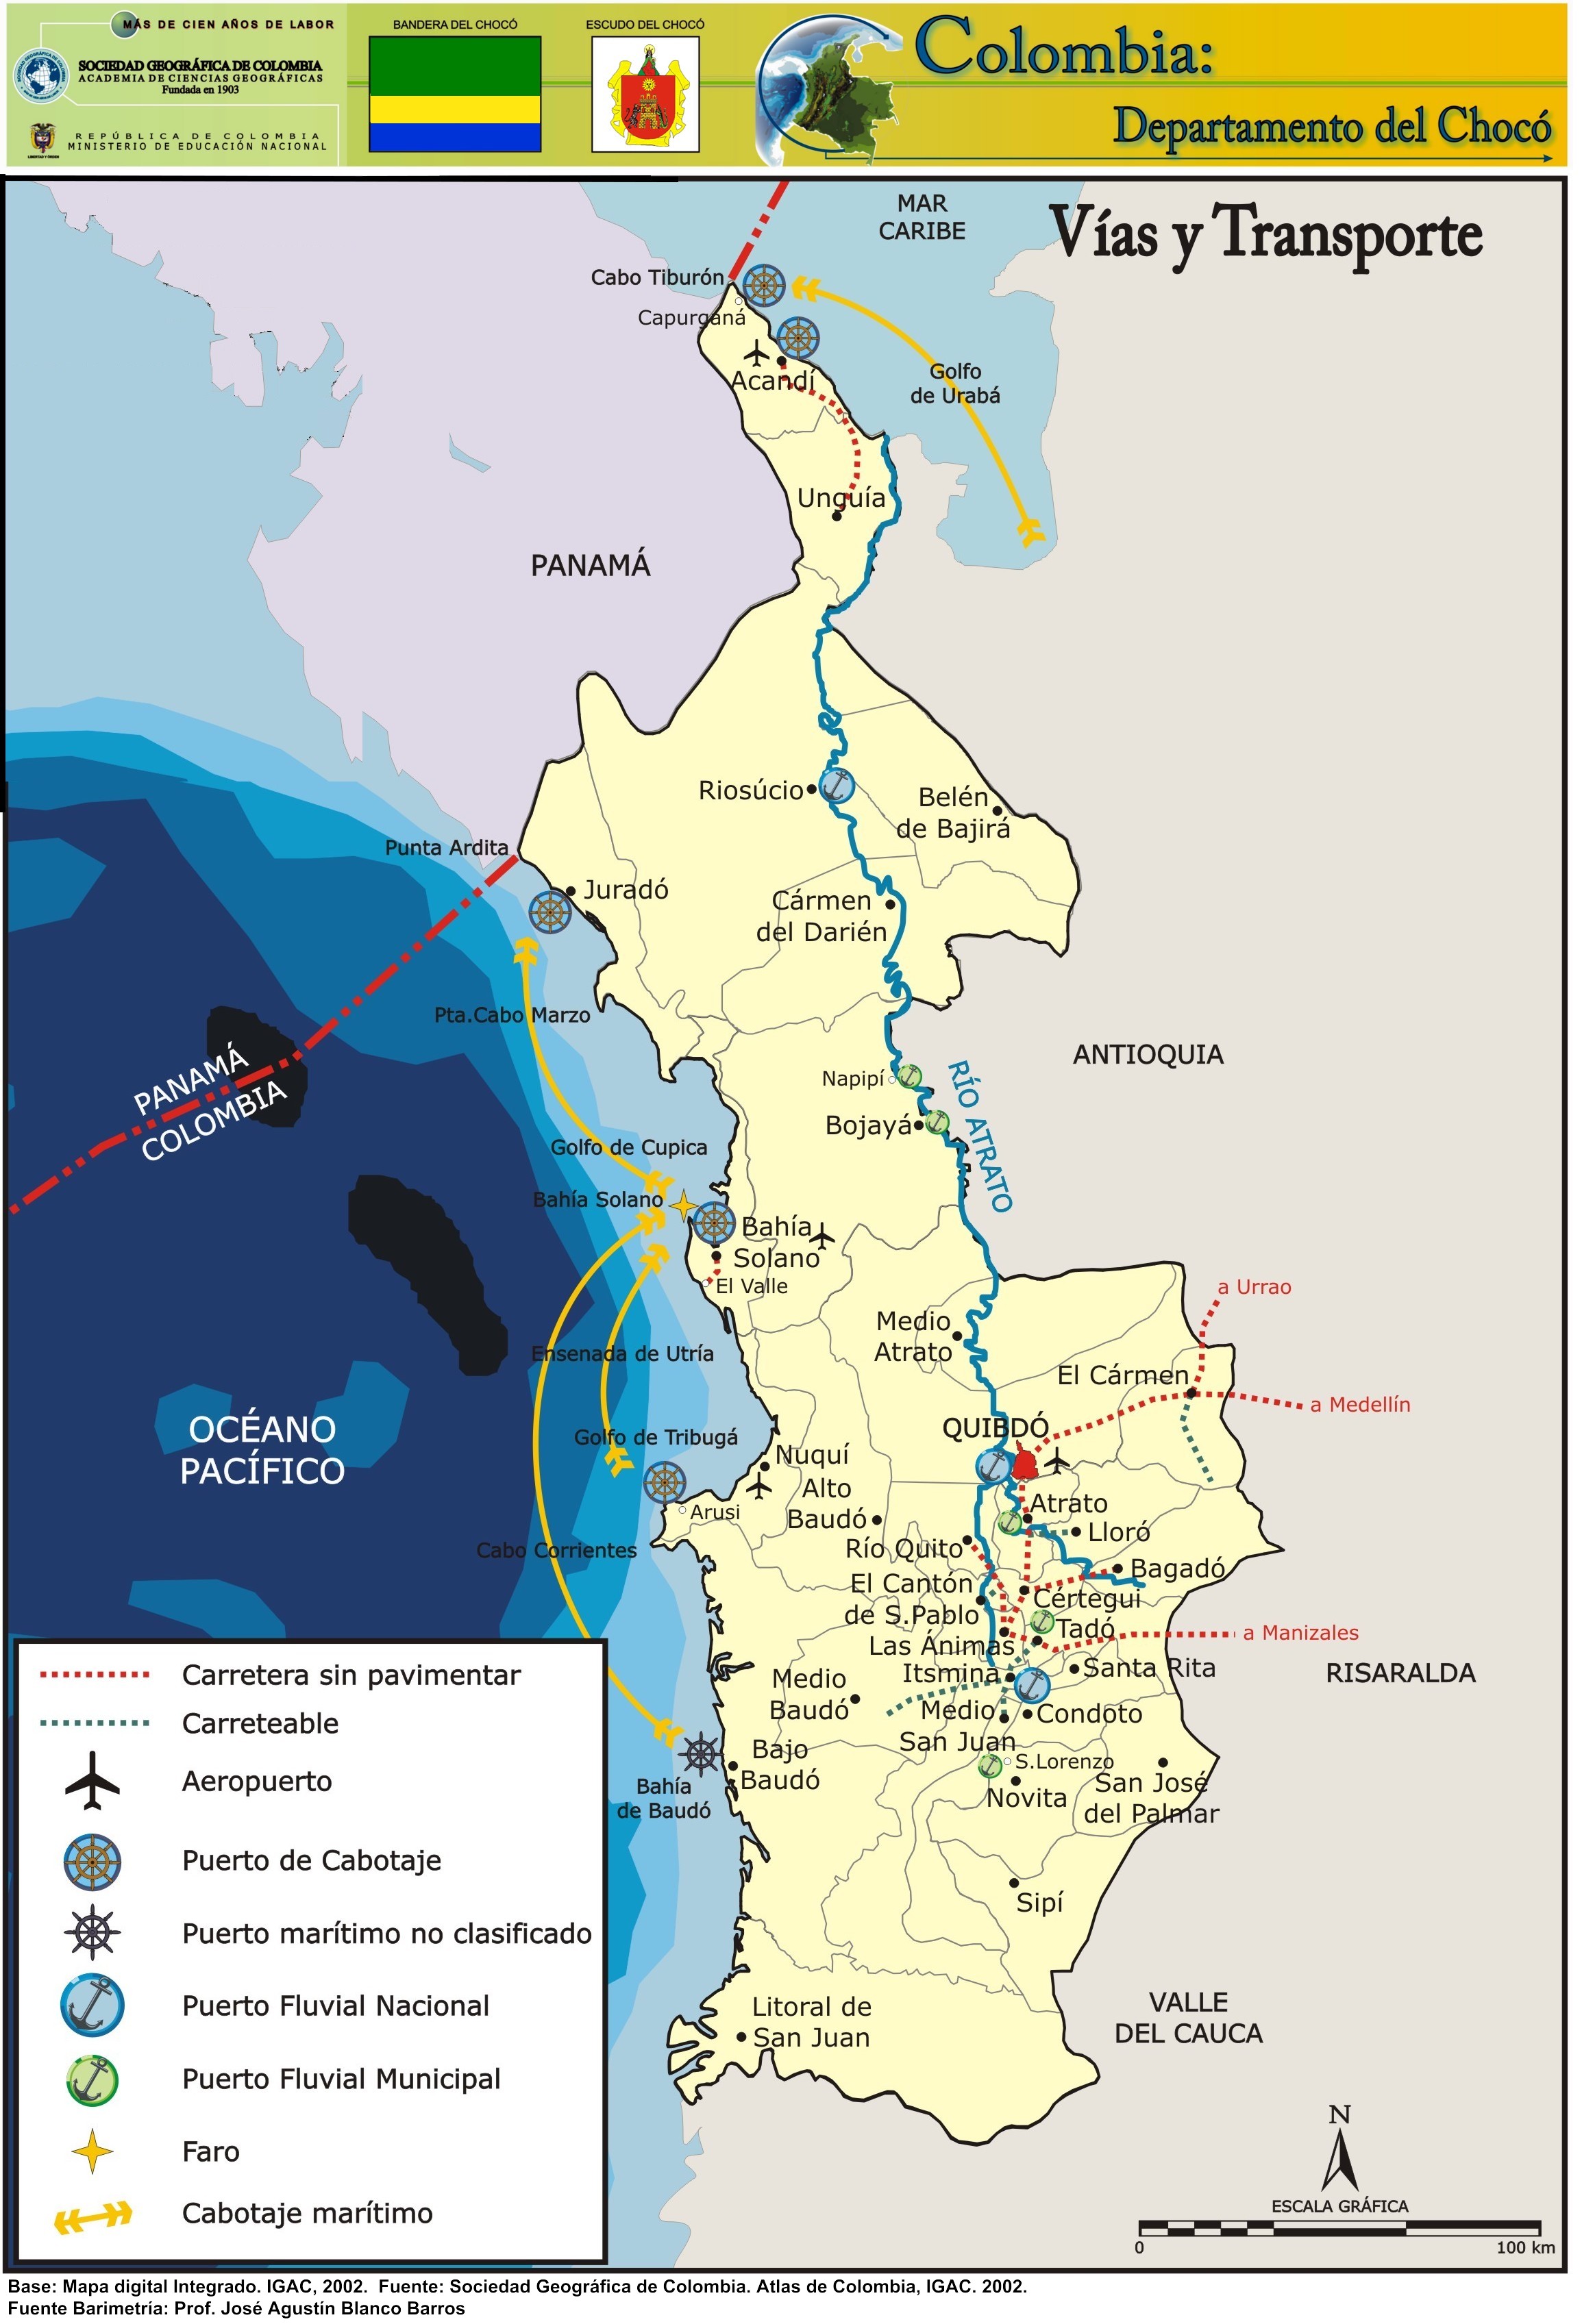 Seguridad en El Chocó - Región del Pacífico, Colombia ✈️ Foro América del Sur